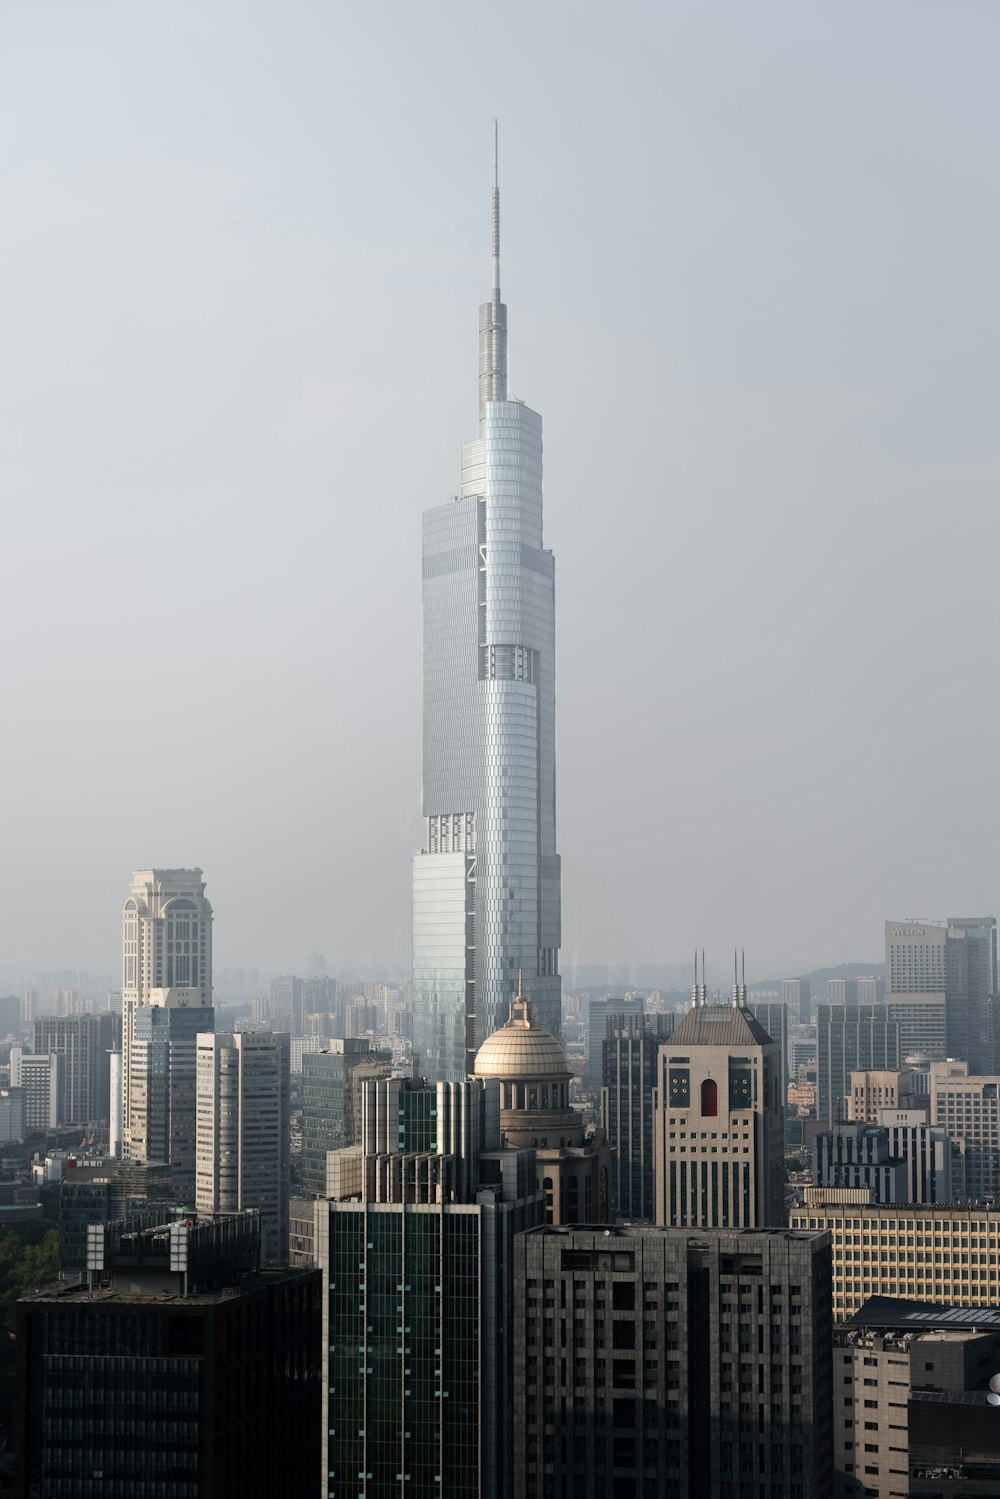 a large skyscraper in a city